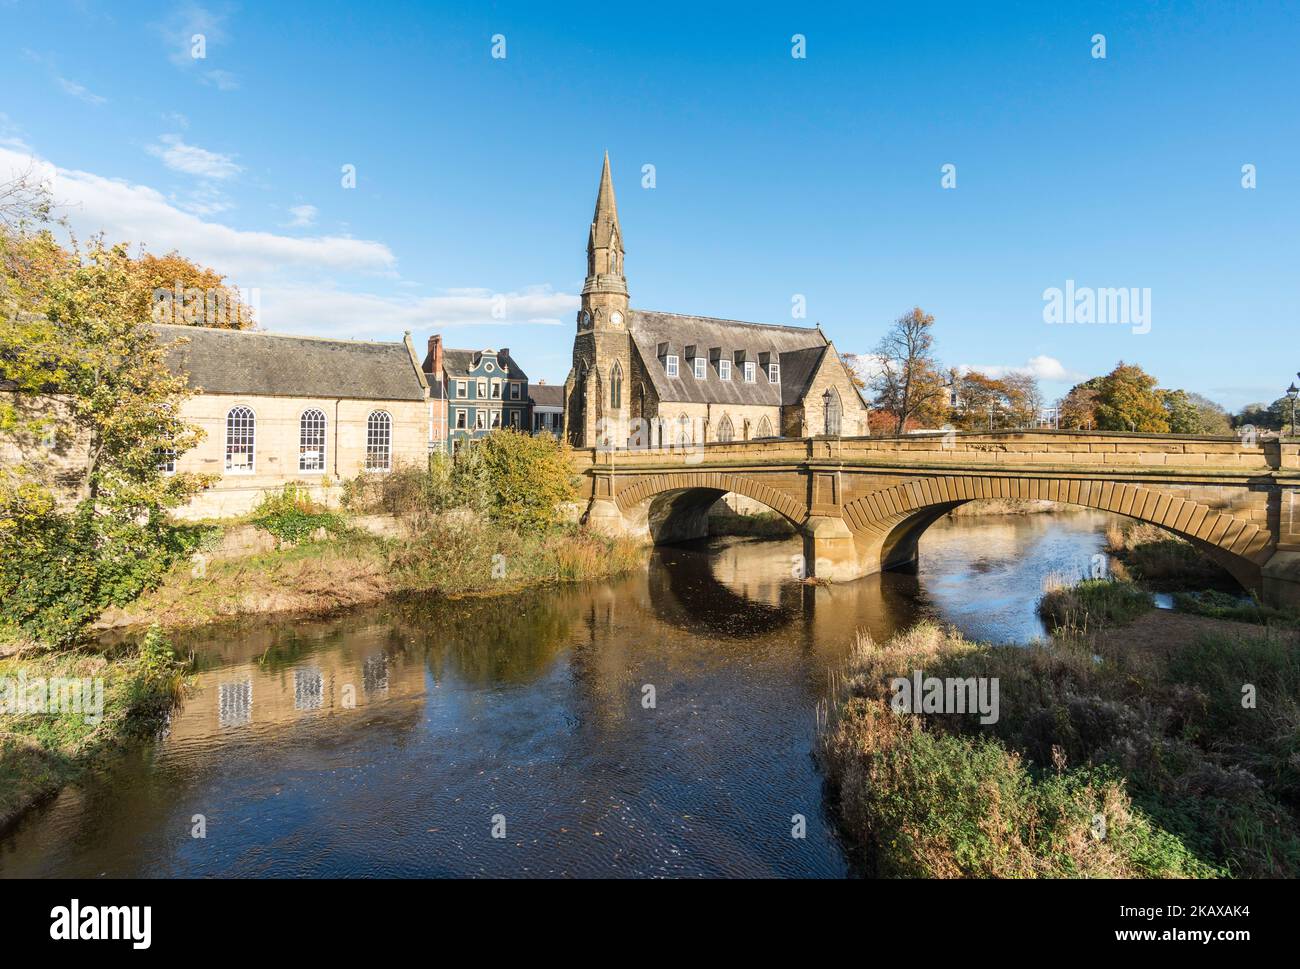 Das chantry-Gebäude, die St. Georges-Kirche und die Telford-Straßenbrücke über den Fluss Wansbeck in Morpeth, Northumberland, England, Großbritannien Stockfoto